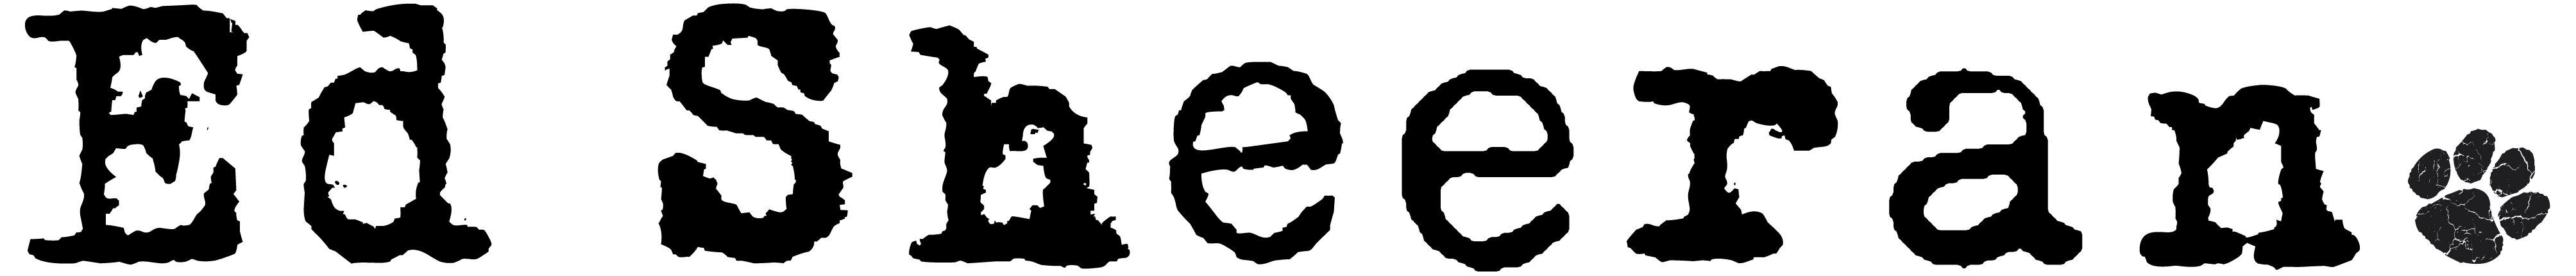 Ed Sheeran Logos